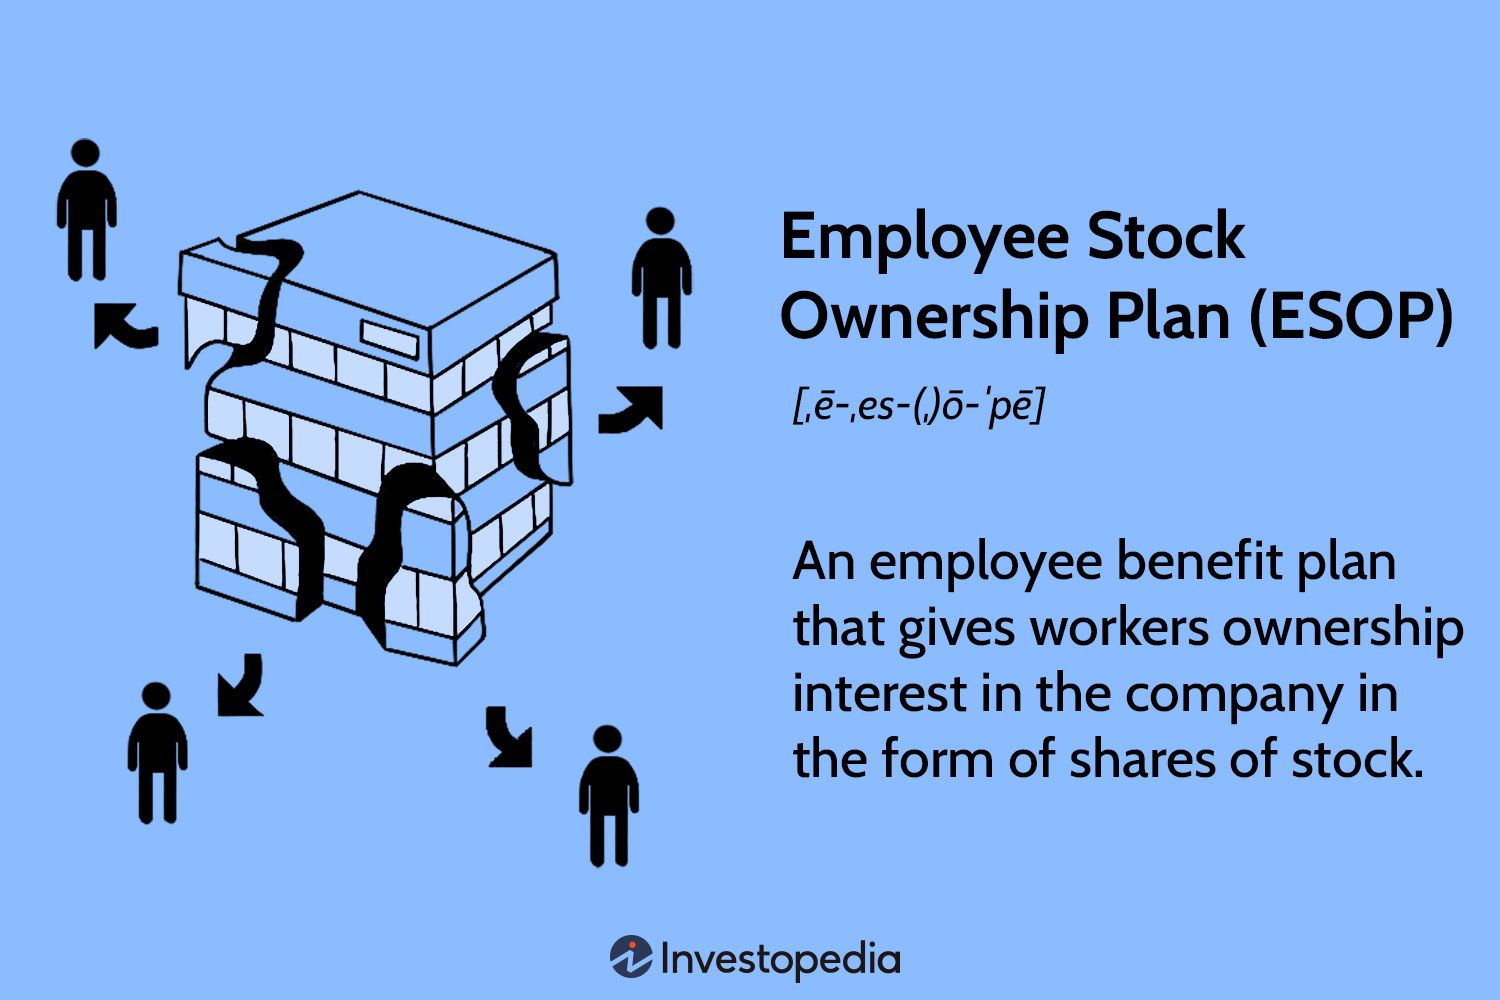 Employee Stock Ownership Plan (ESOP)